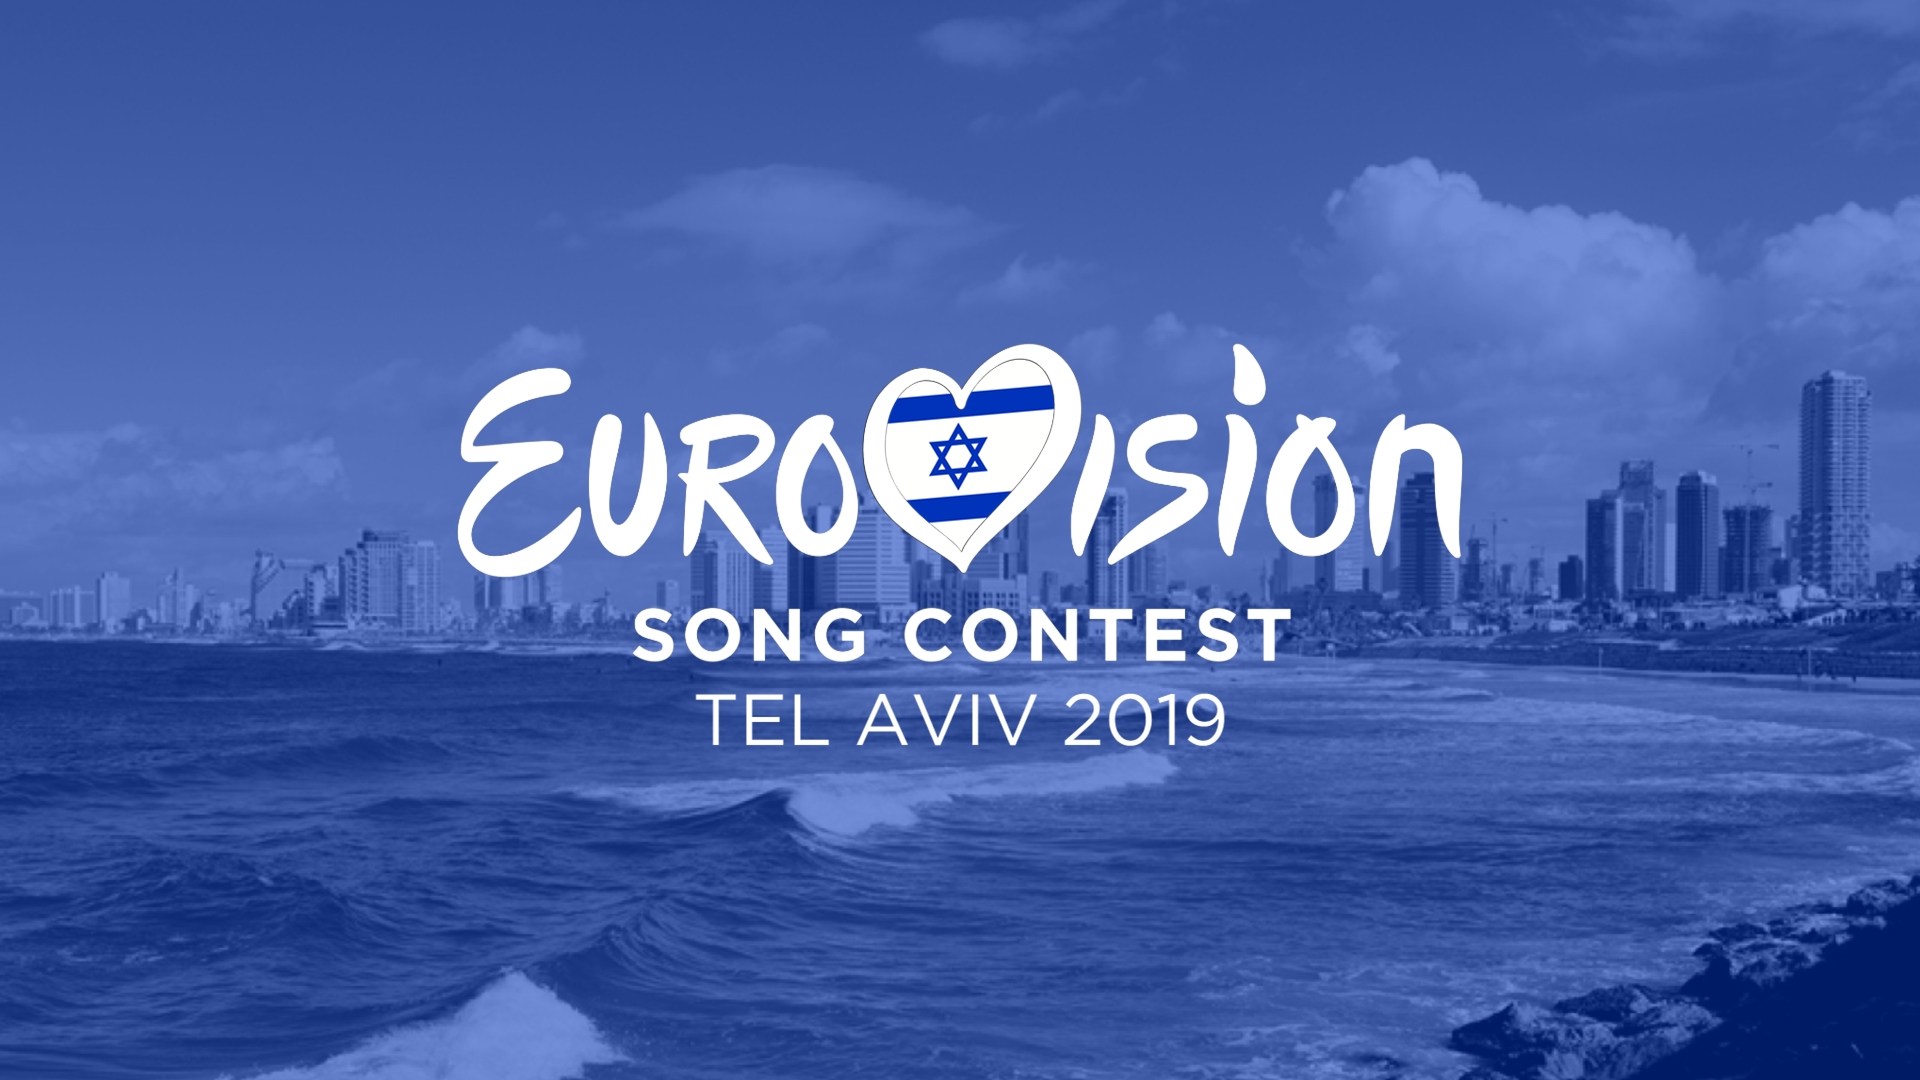 Votre Eurovision « vintage » : Tel Aviv 2019 (dernières heures pour voter)